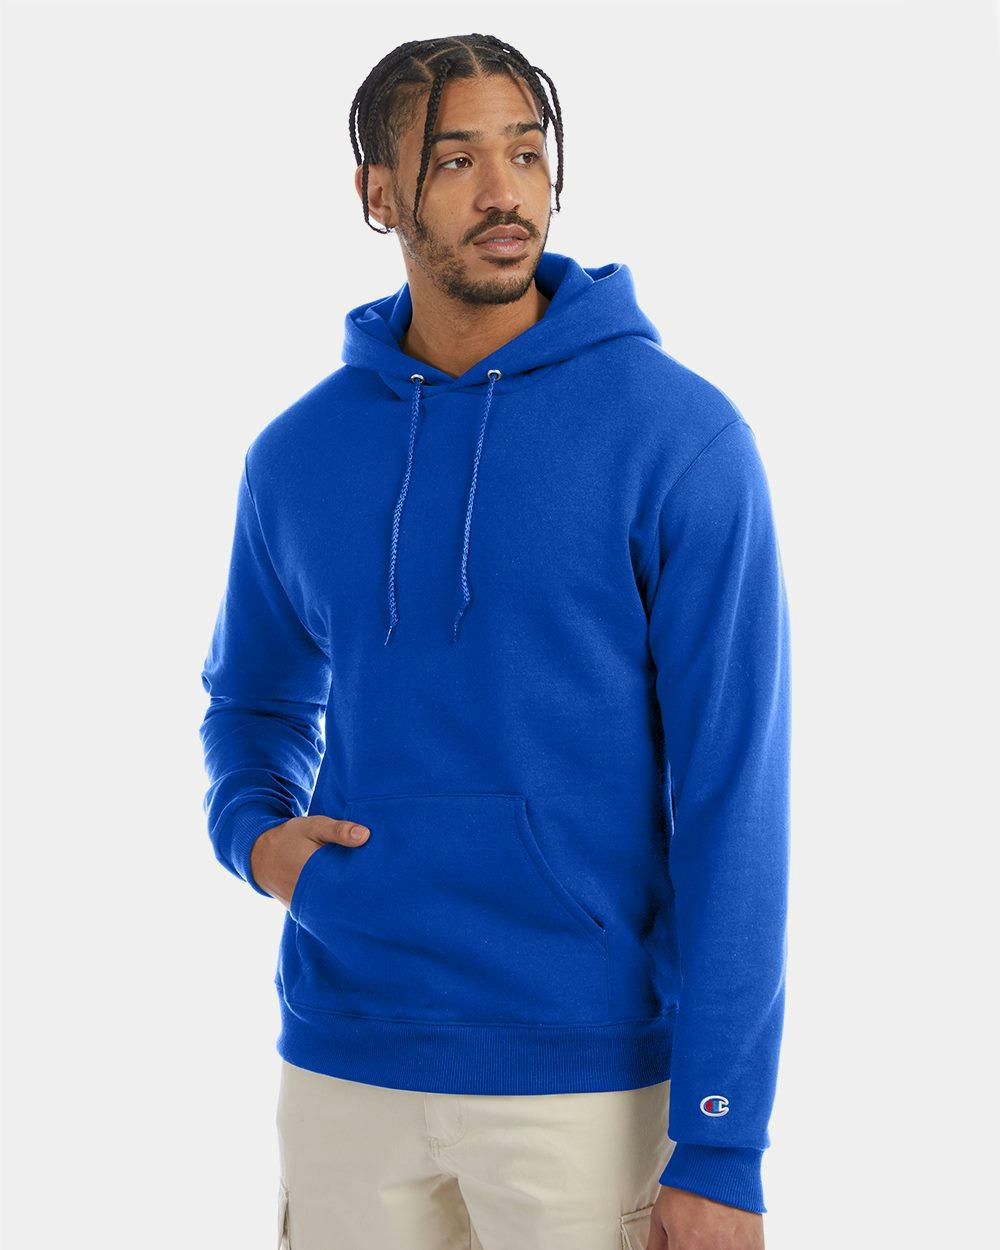 Image for Powerblend® Hooded Sweatshirt - S700